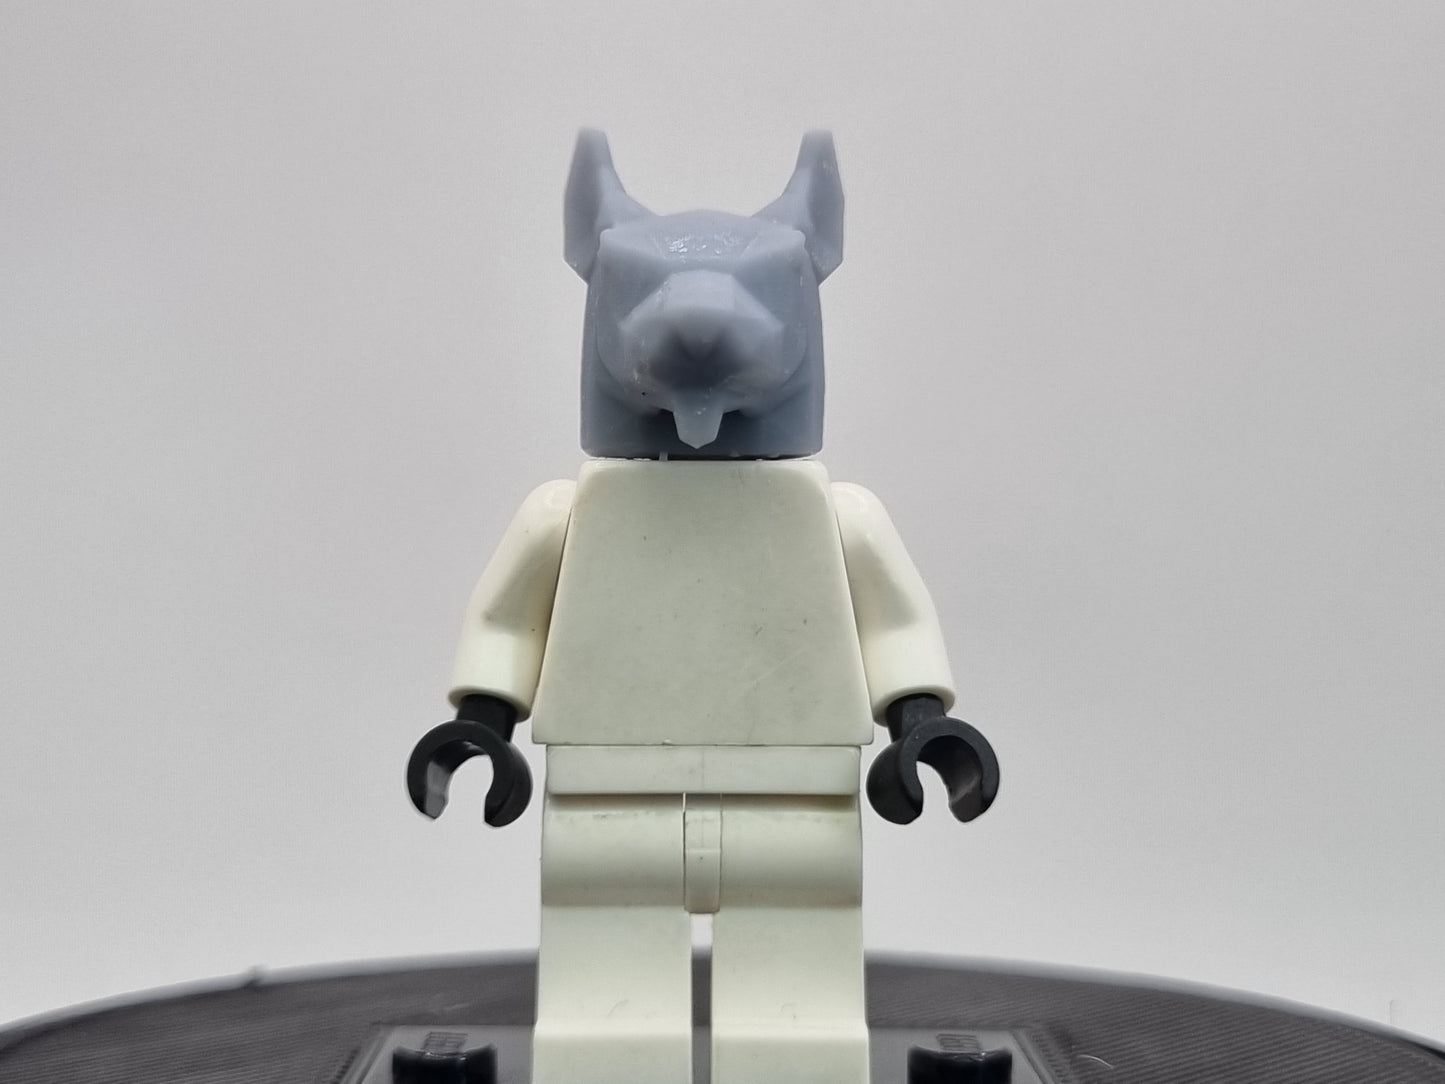 lego compatible 3D printed ninja rat head!